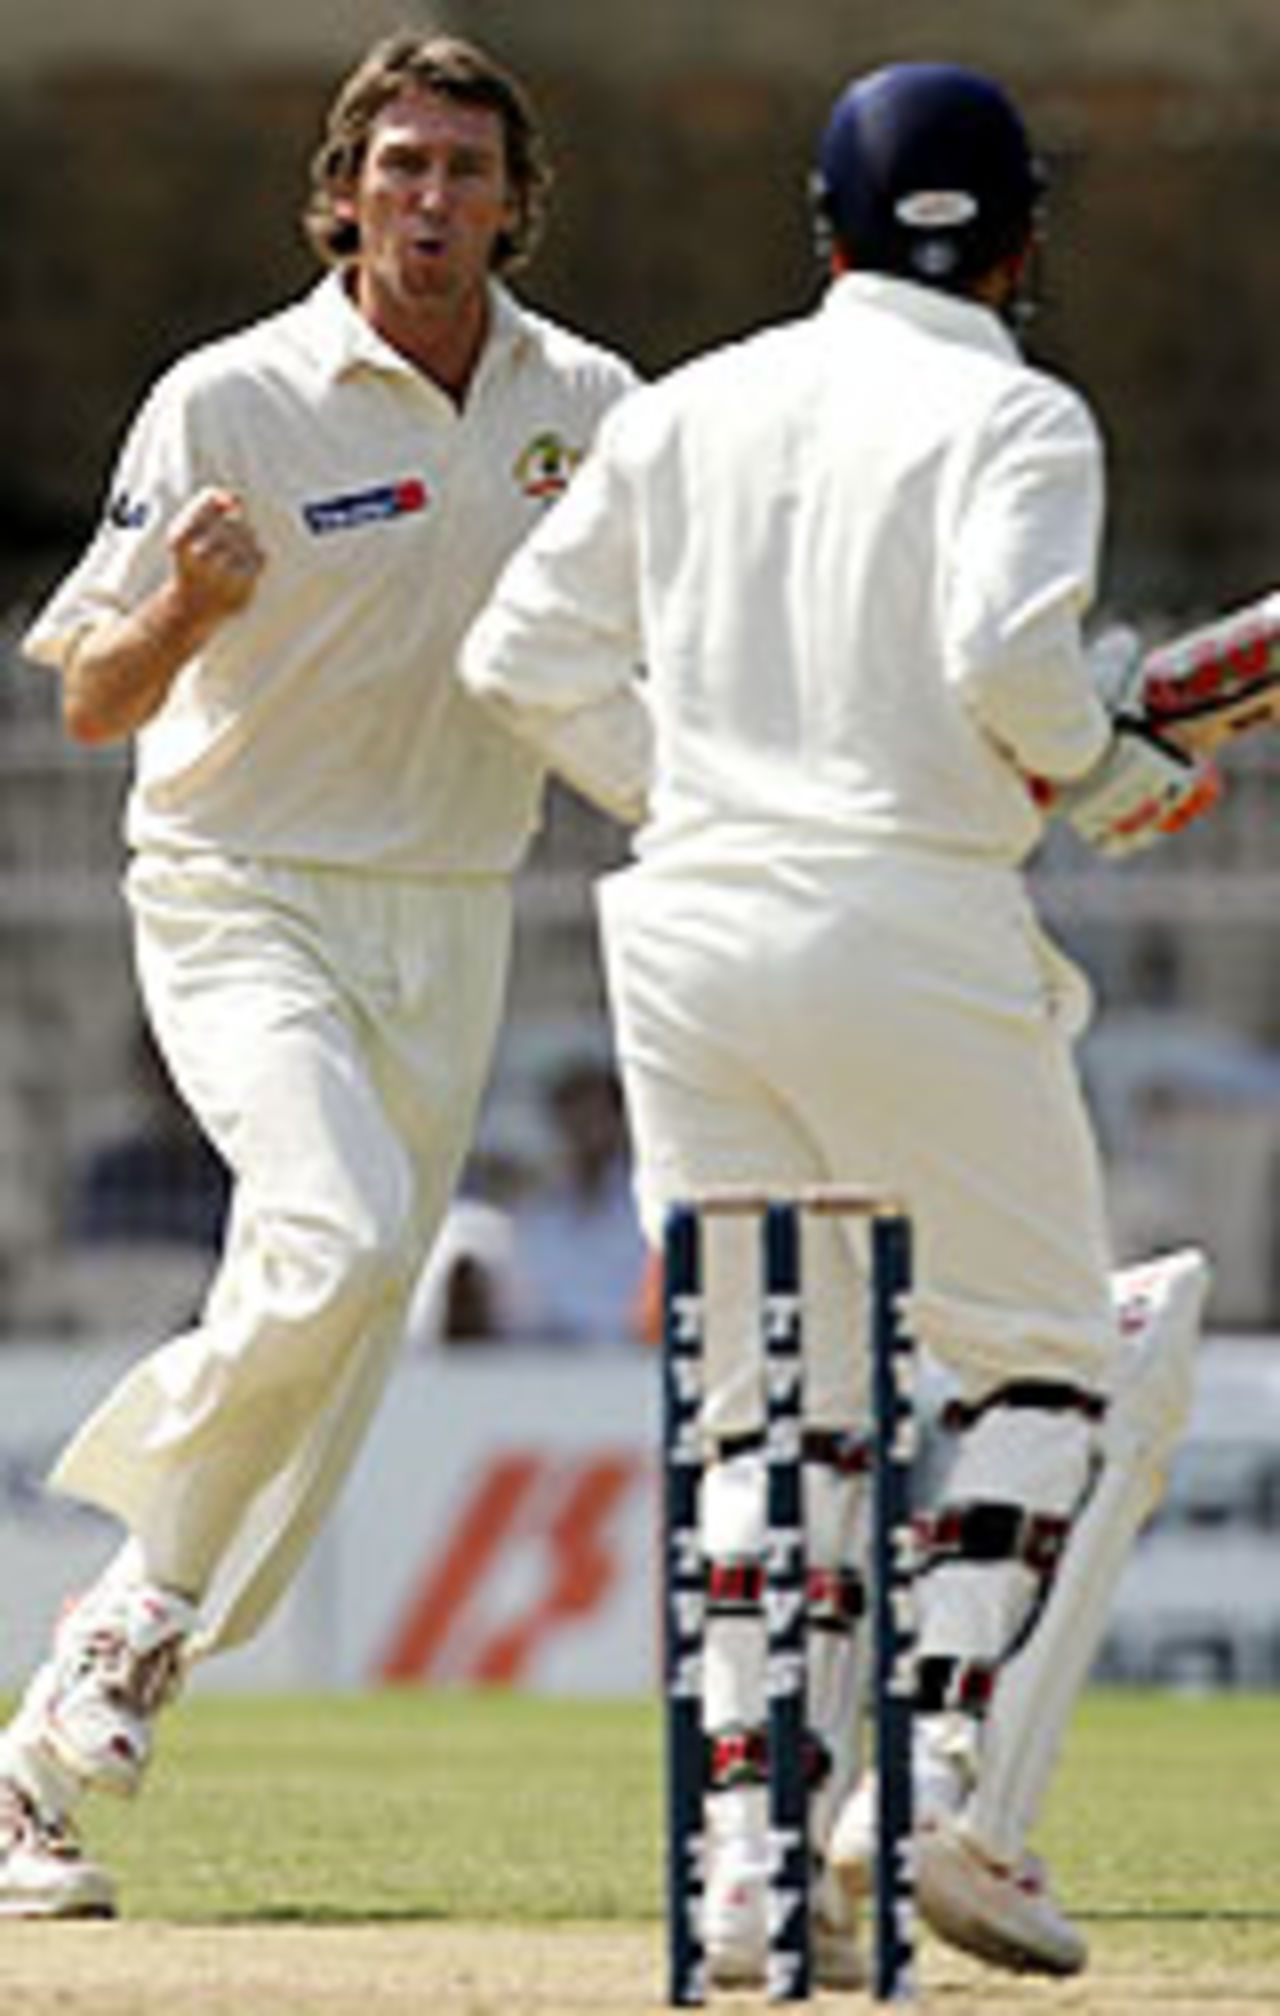 Glenn McGrath dismisses Virender Sehwag, India v Australia, 3rd Test, Nagpur, October 27, 2004